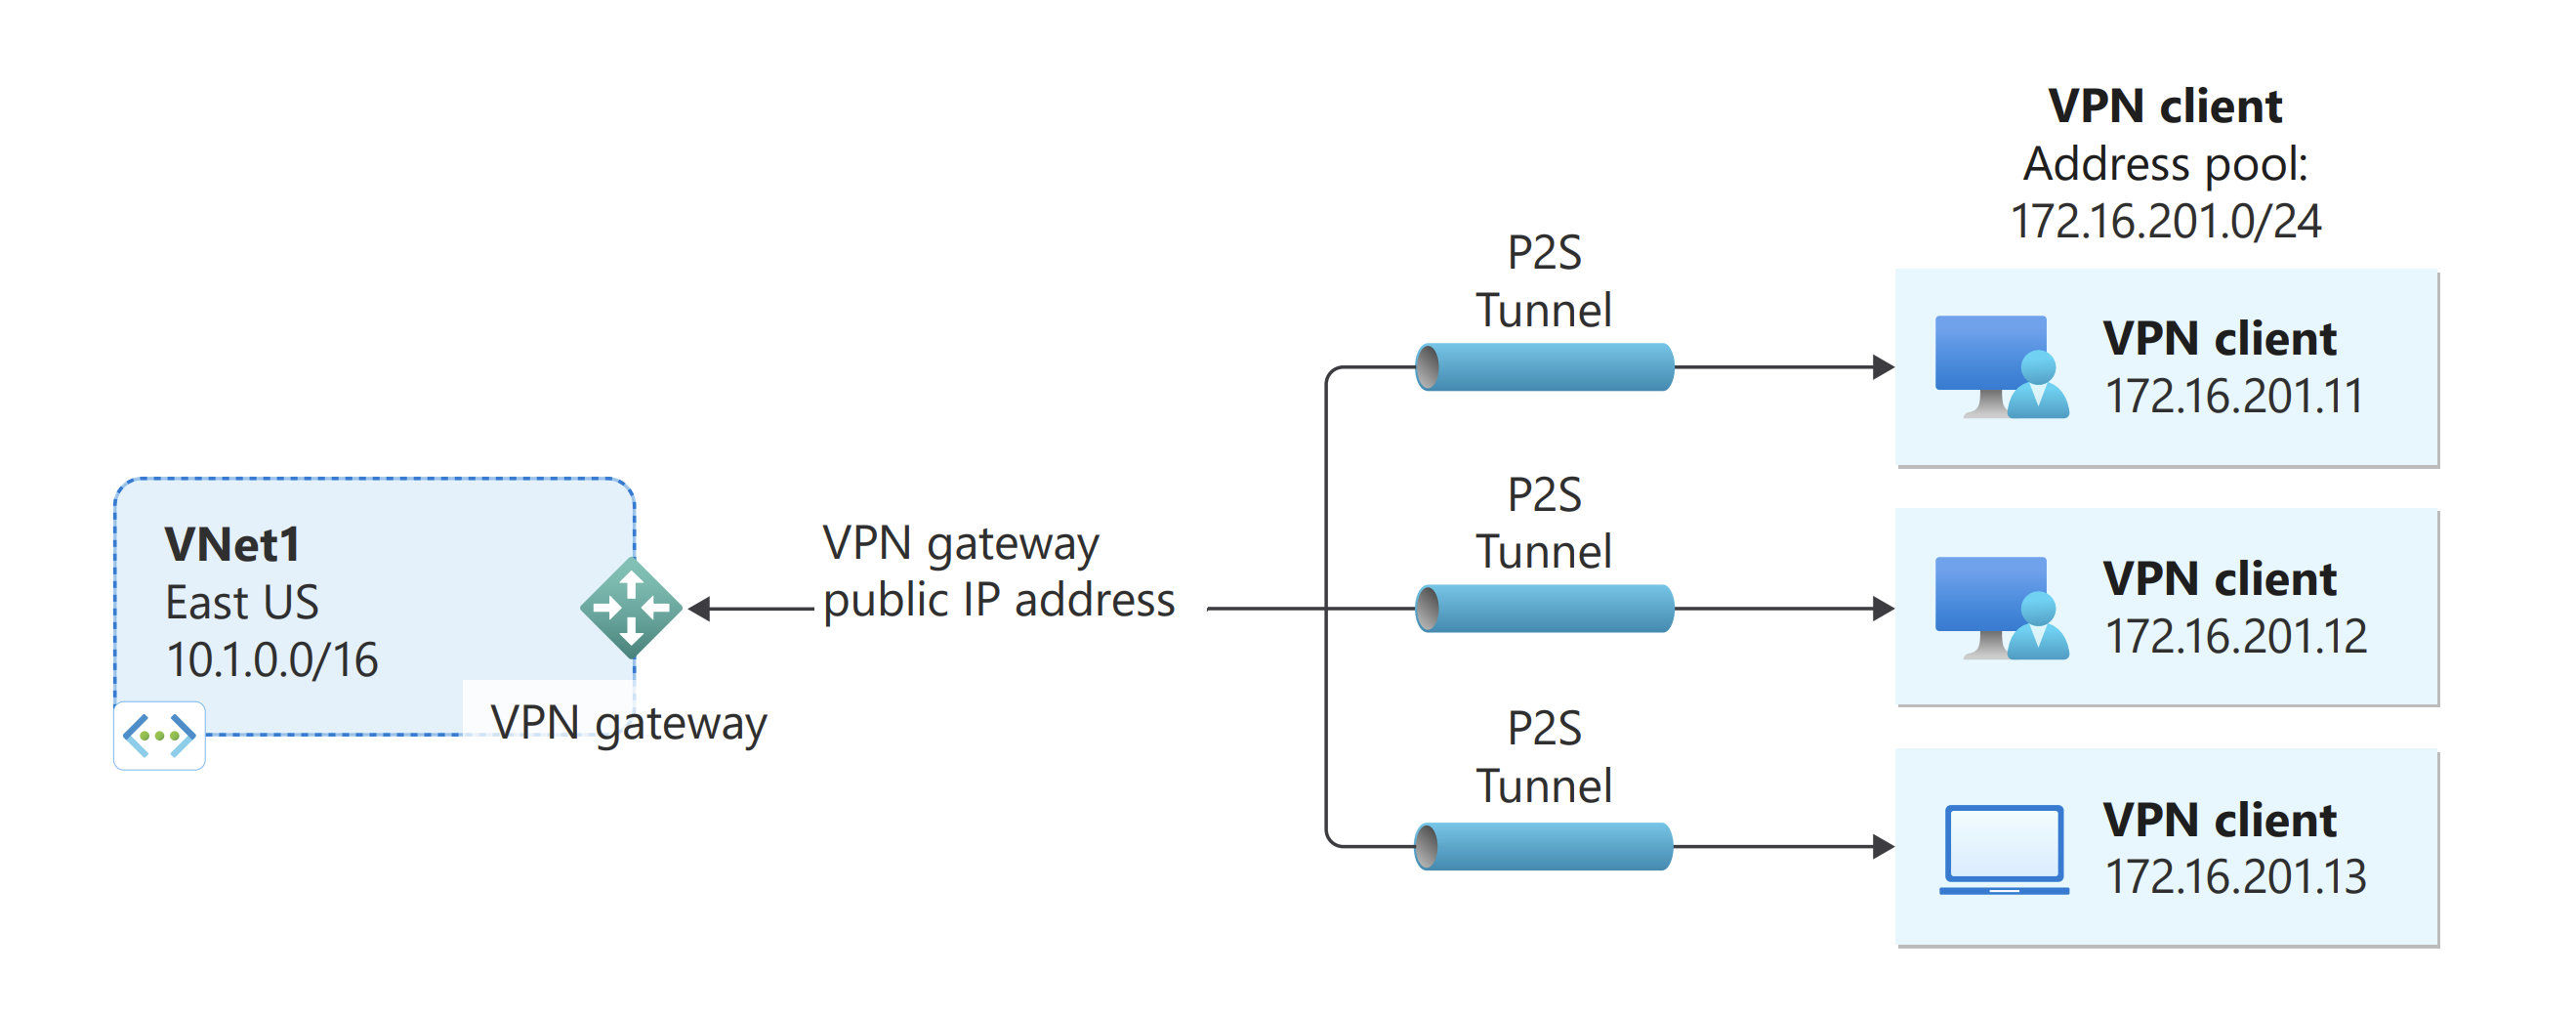 Co je to konfigurace VPN?